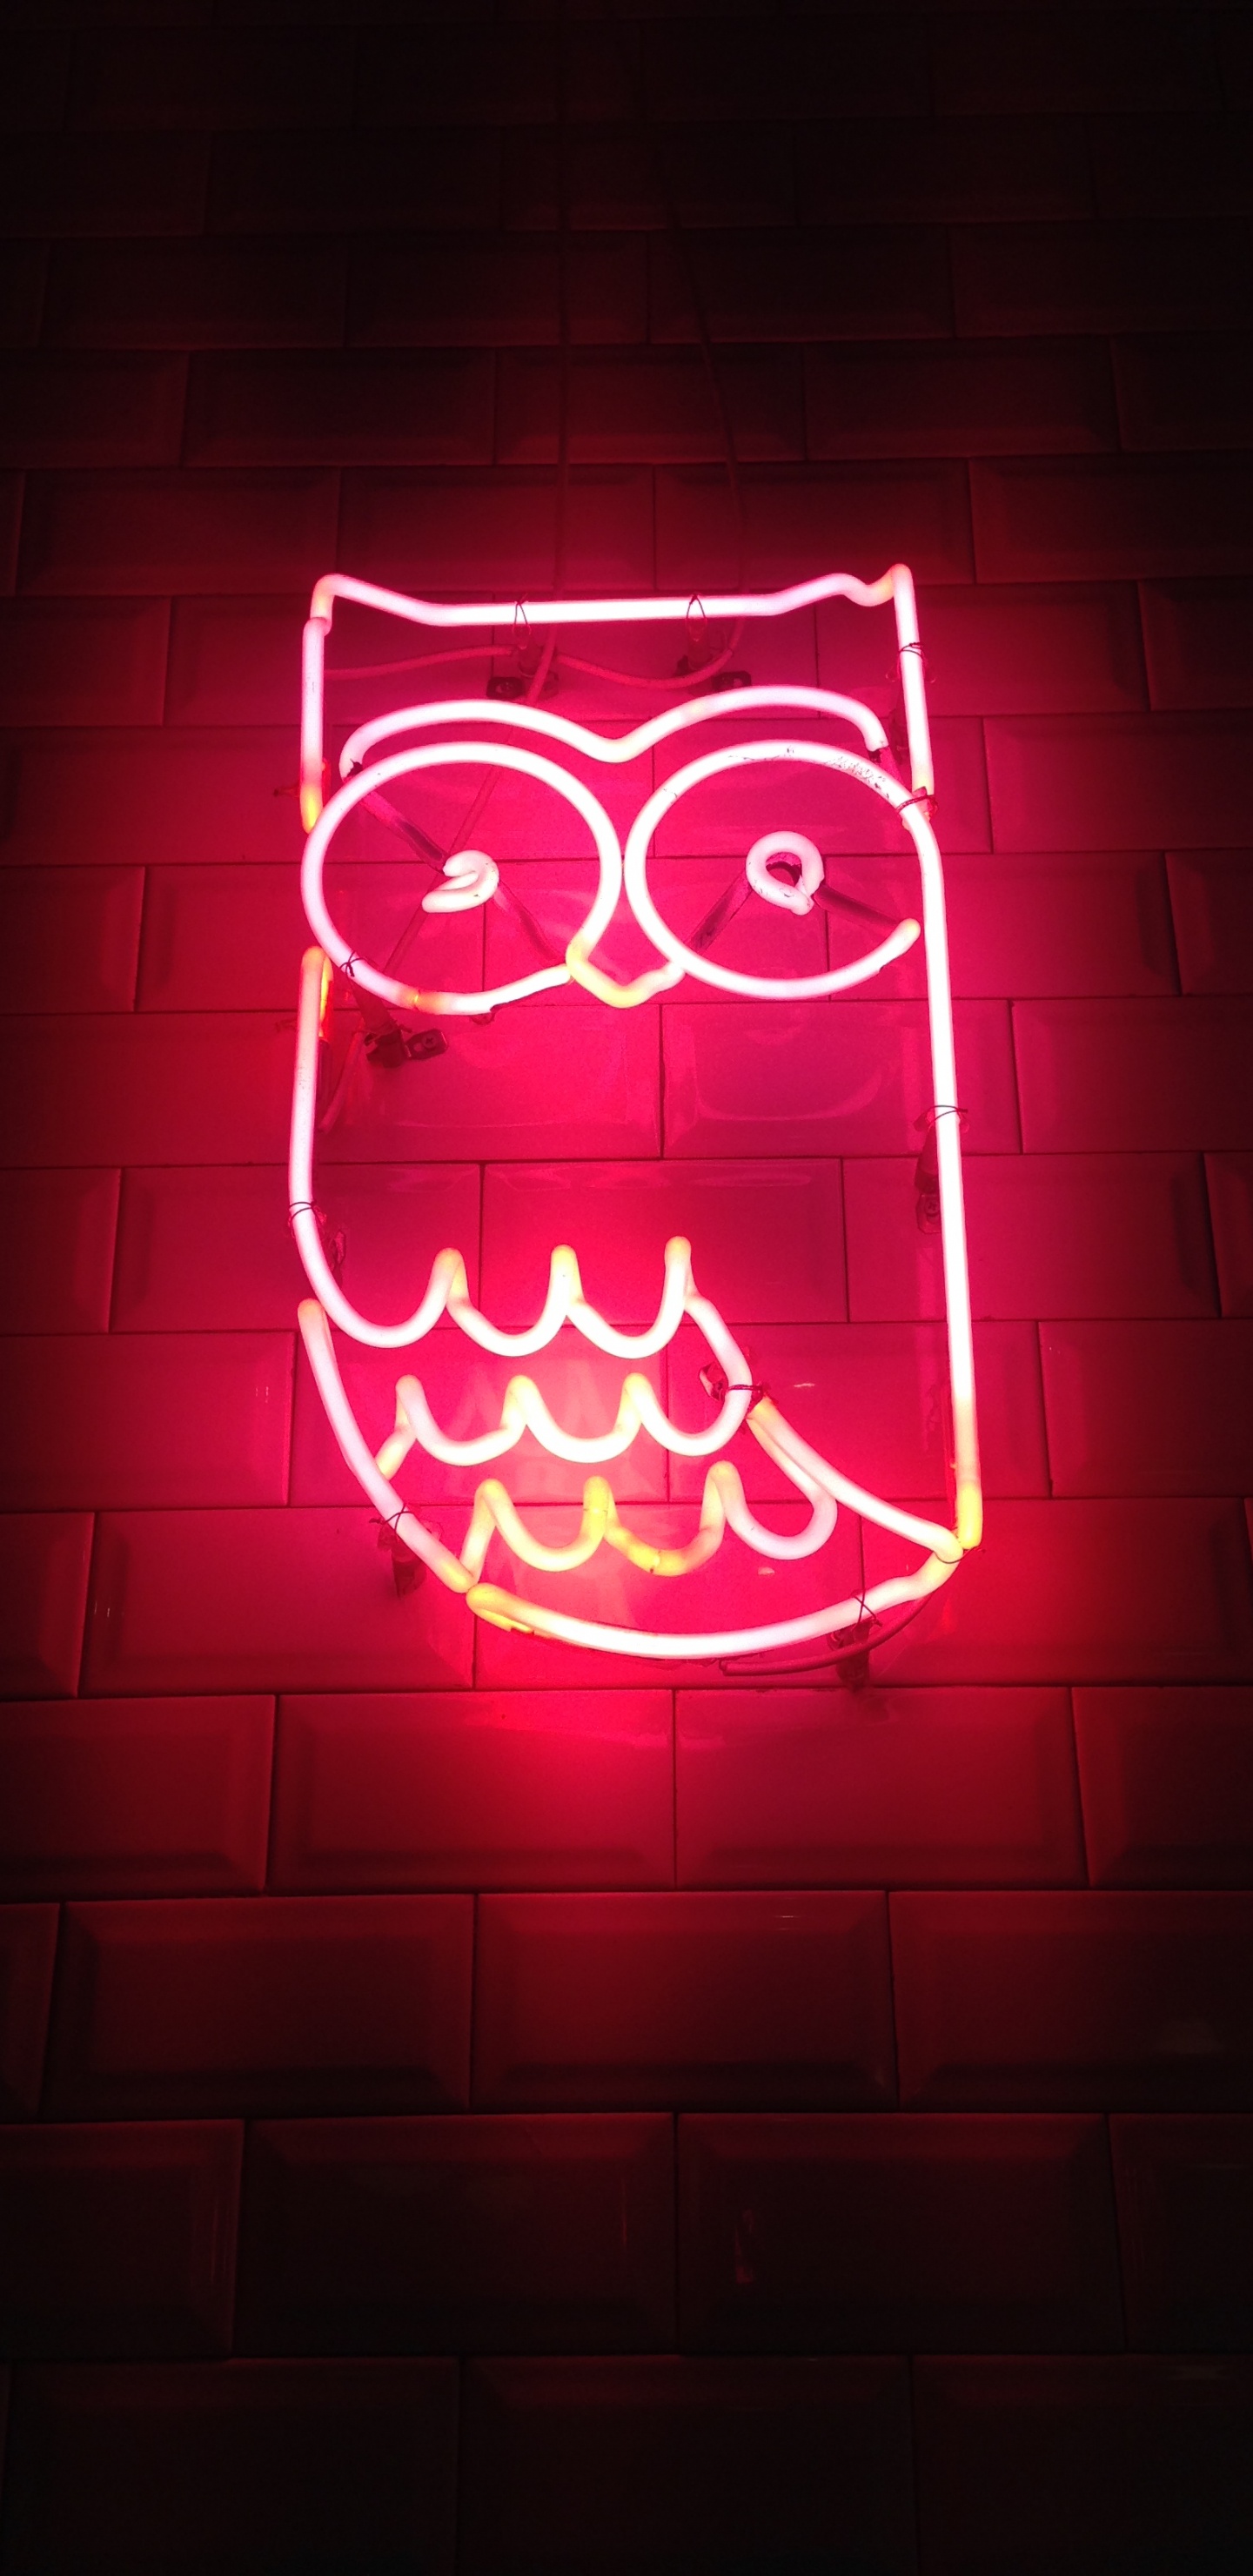 Aesthetic Neon Owl, Owls, Neon, Neon Lighting, Light. Wallpaper in 1440x2960 Resolution